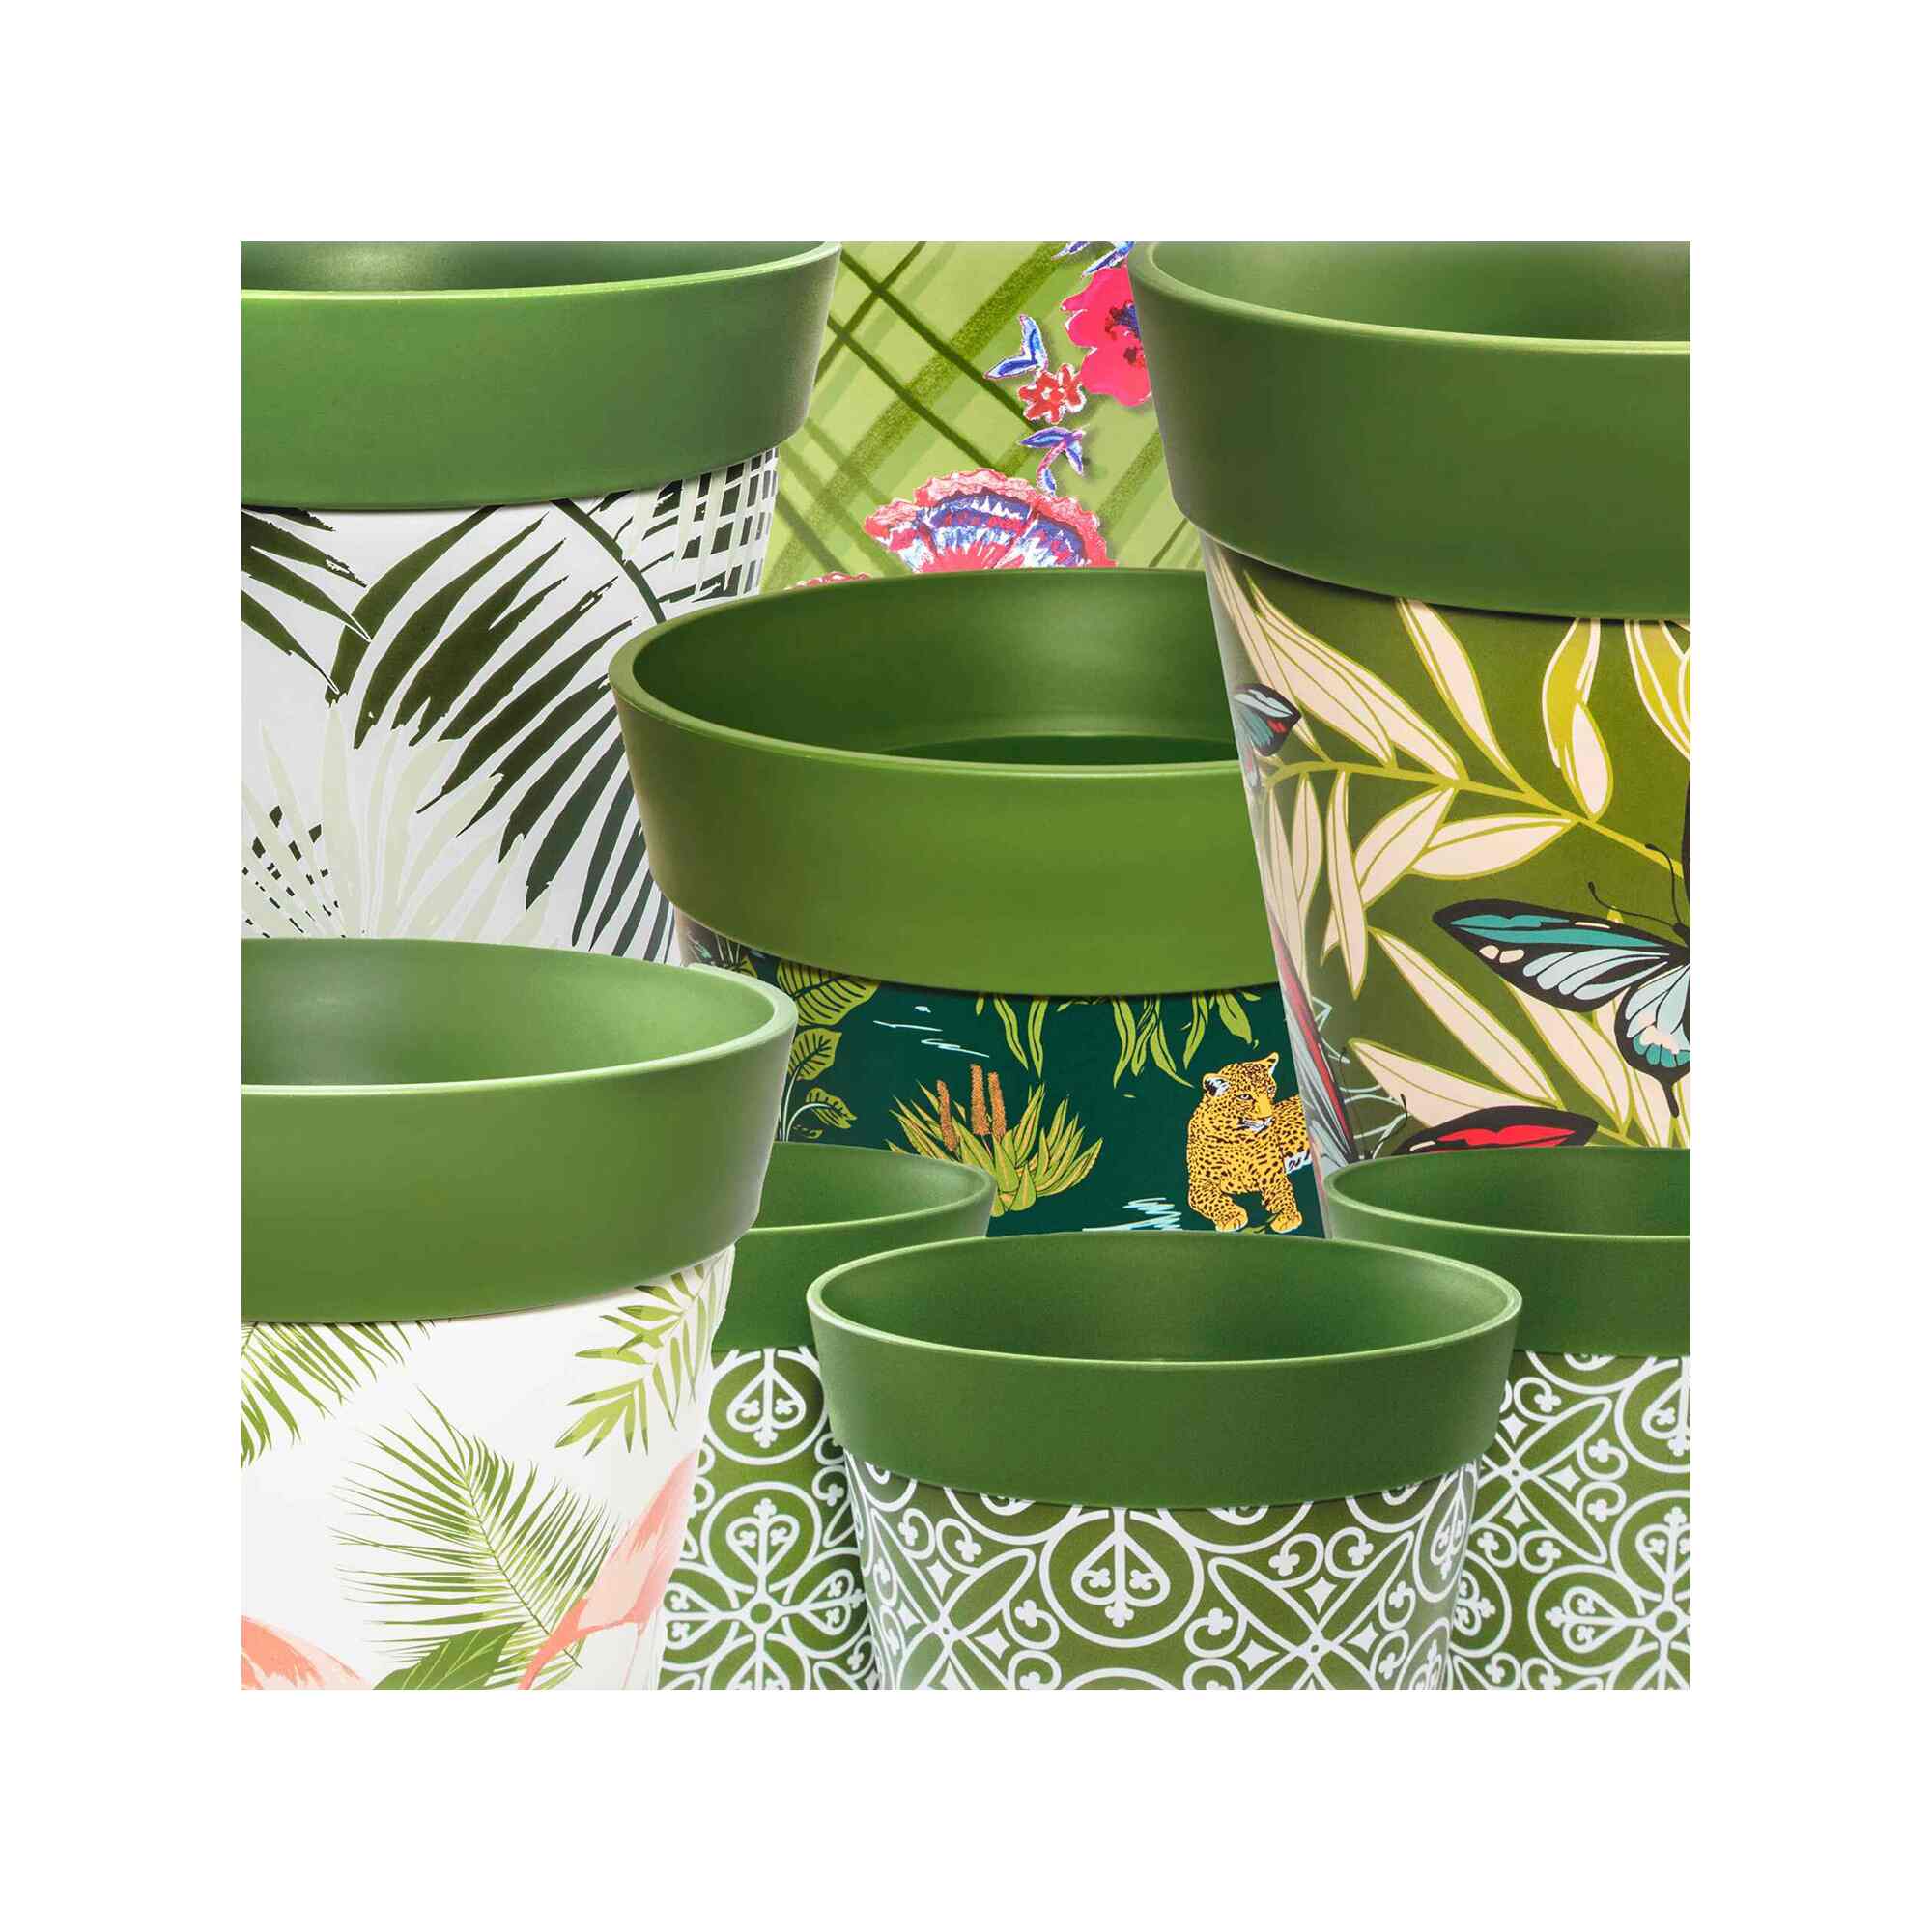 Plastic flowerpots in a range of green designs